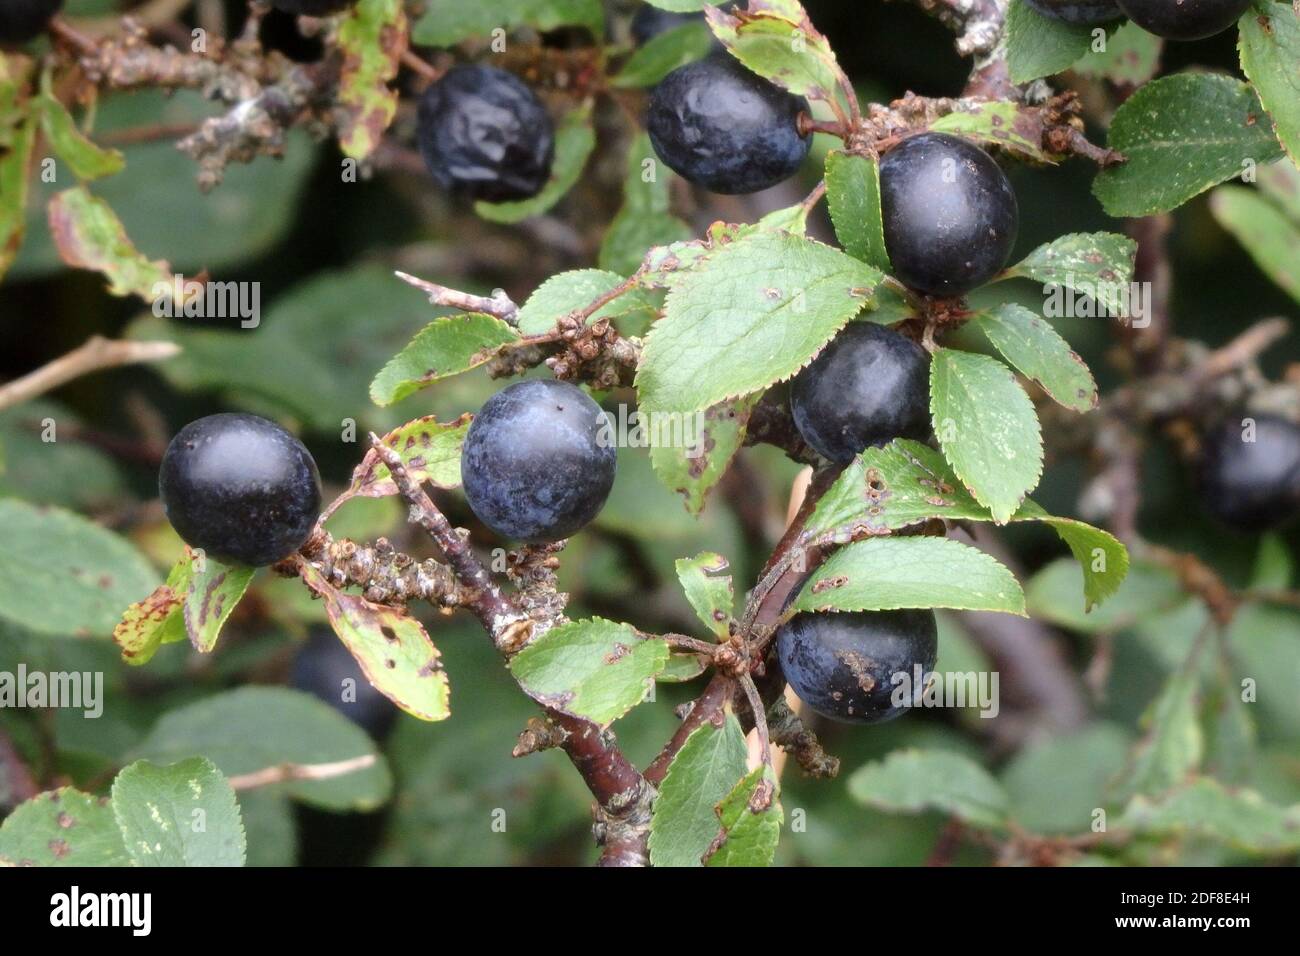 Sloe Berries On A Blackthorn Tree or Bush ( Prumus spinosa ) UK in September Stock Photo